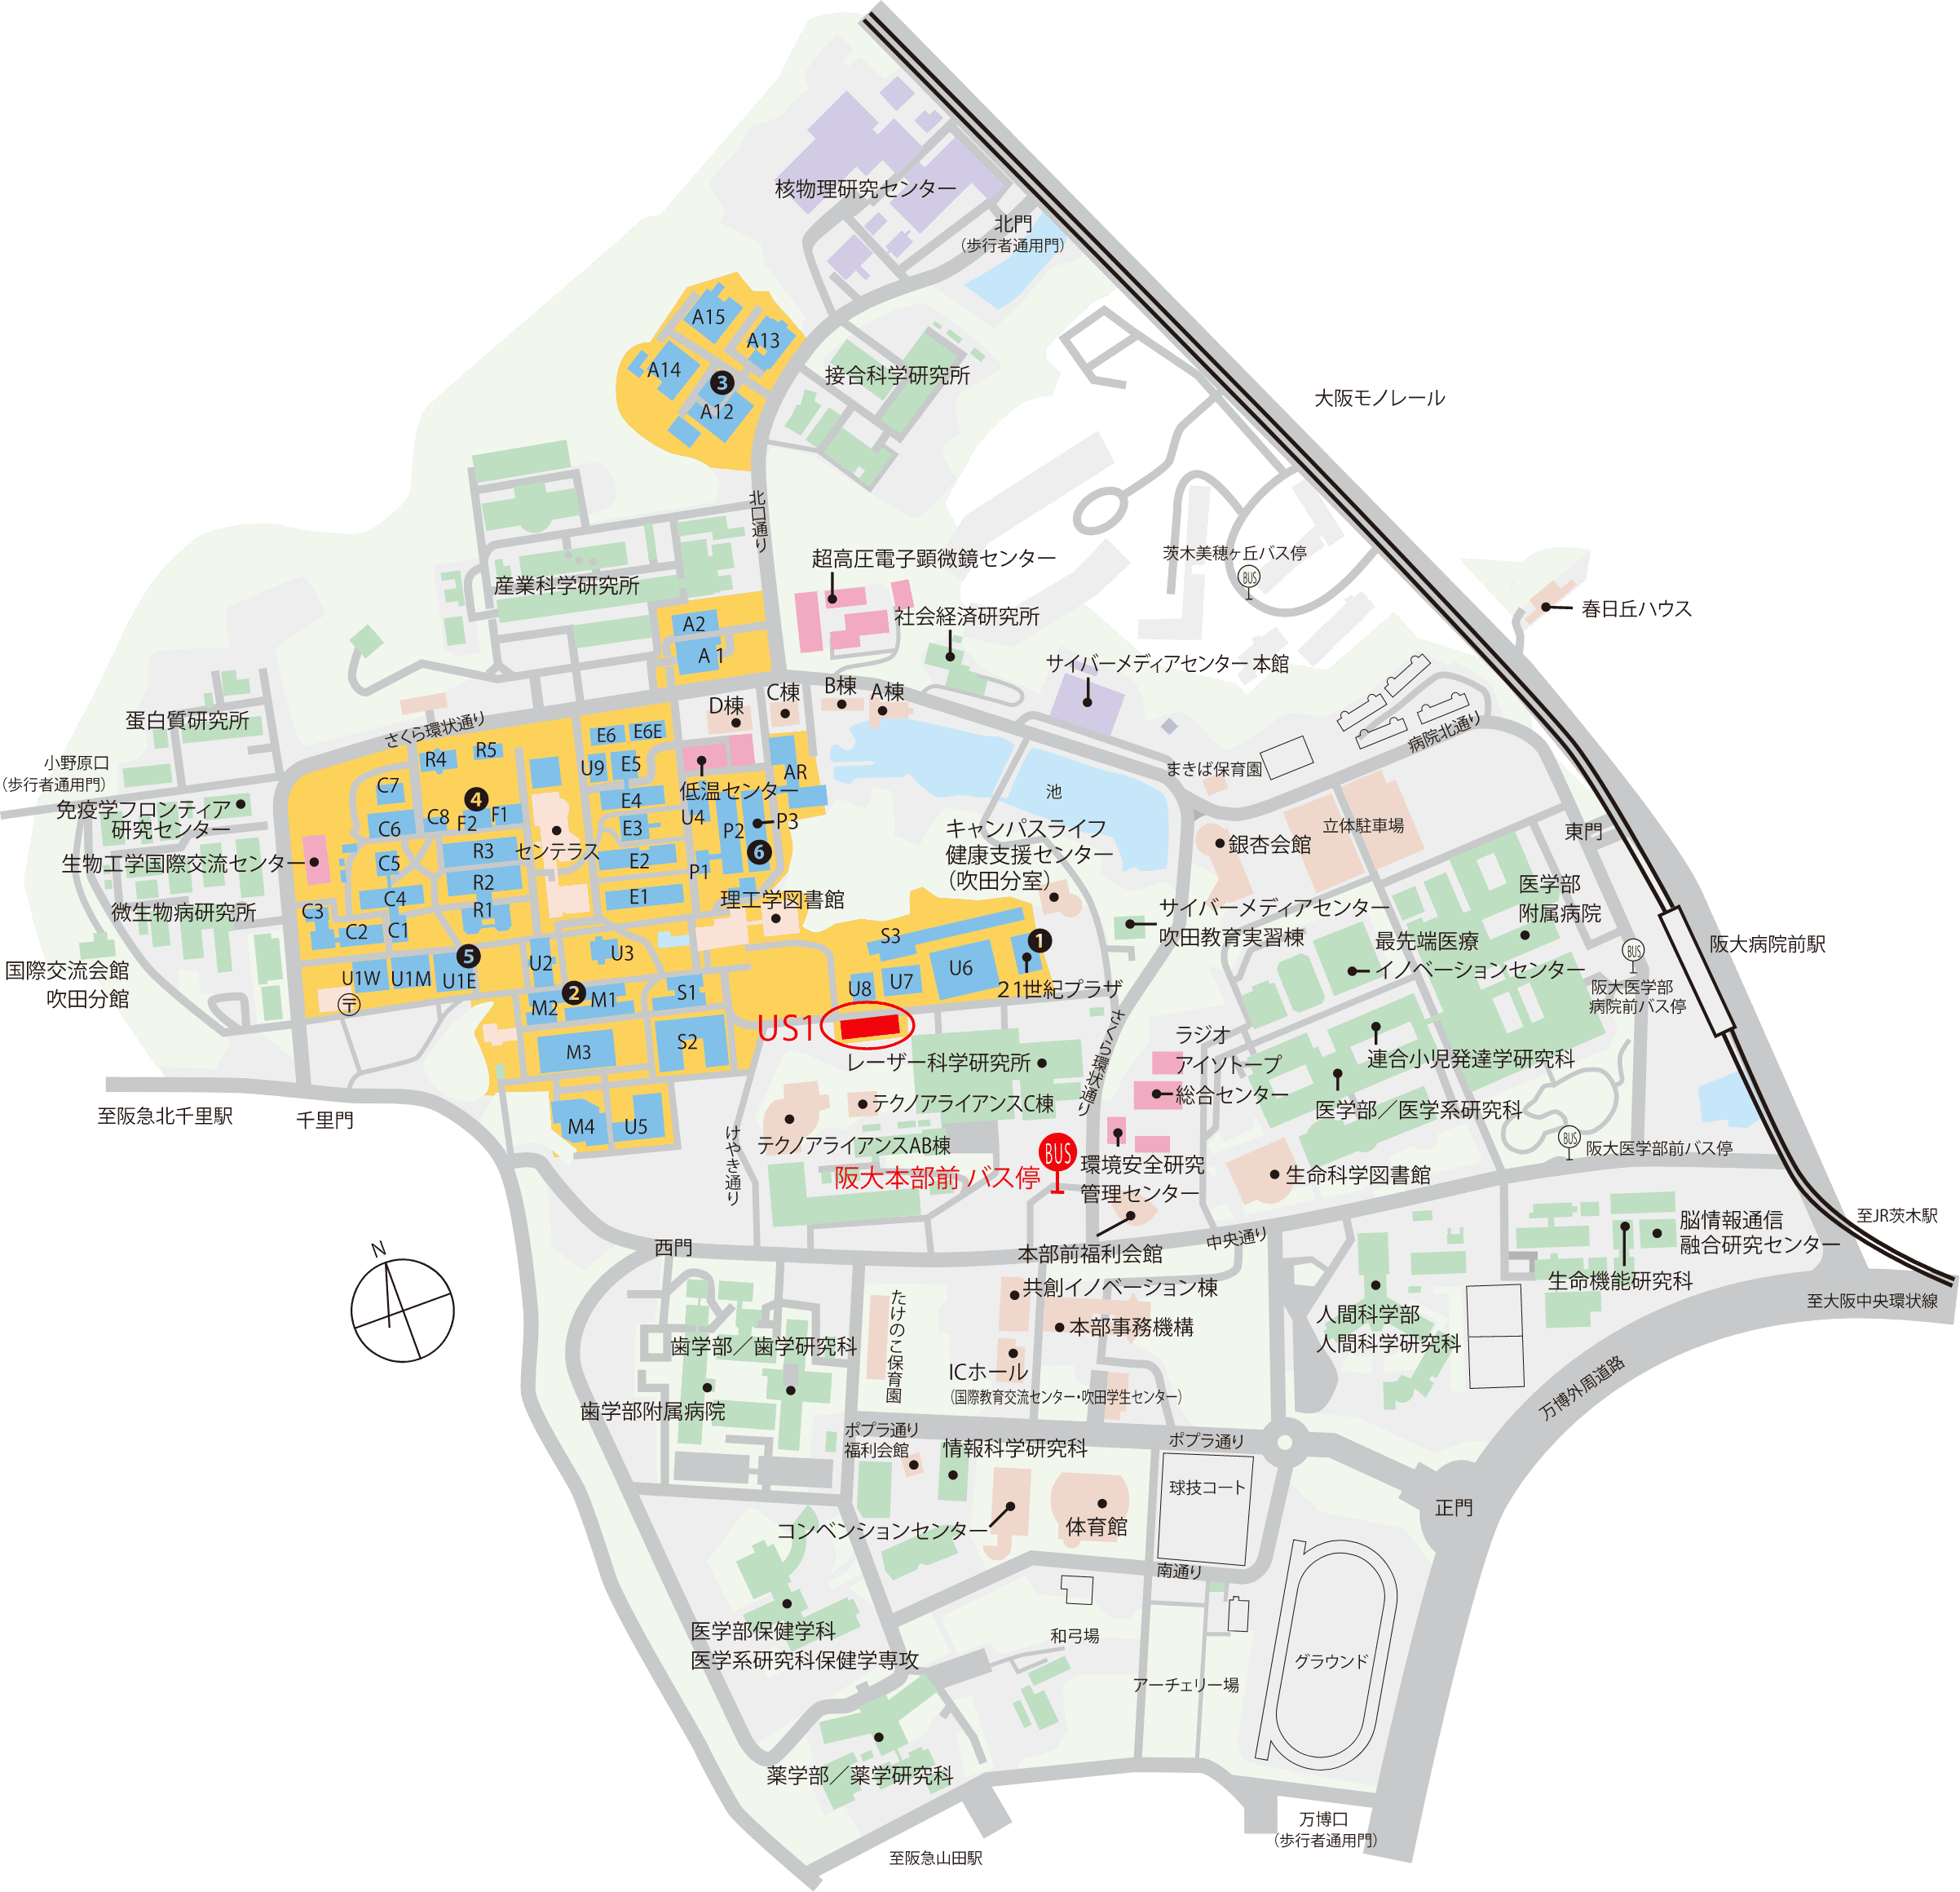 キャンパスマップ